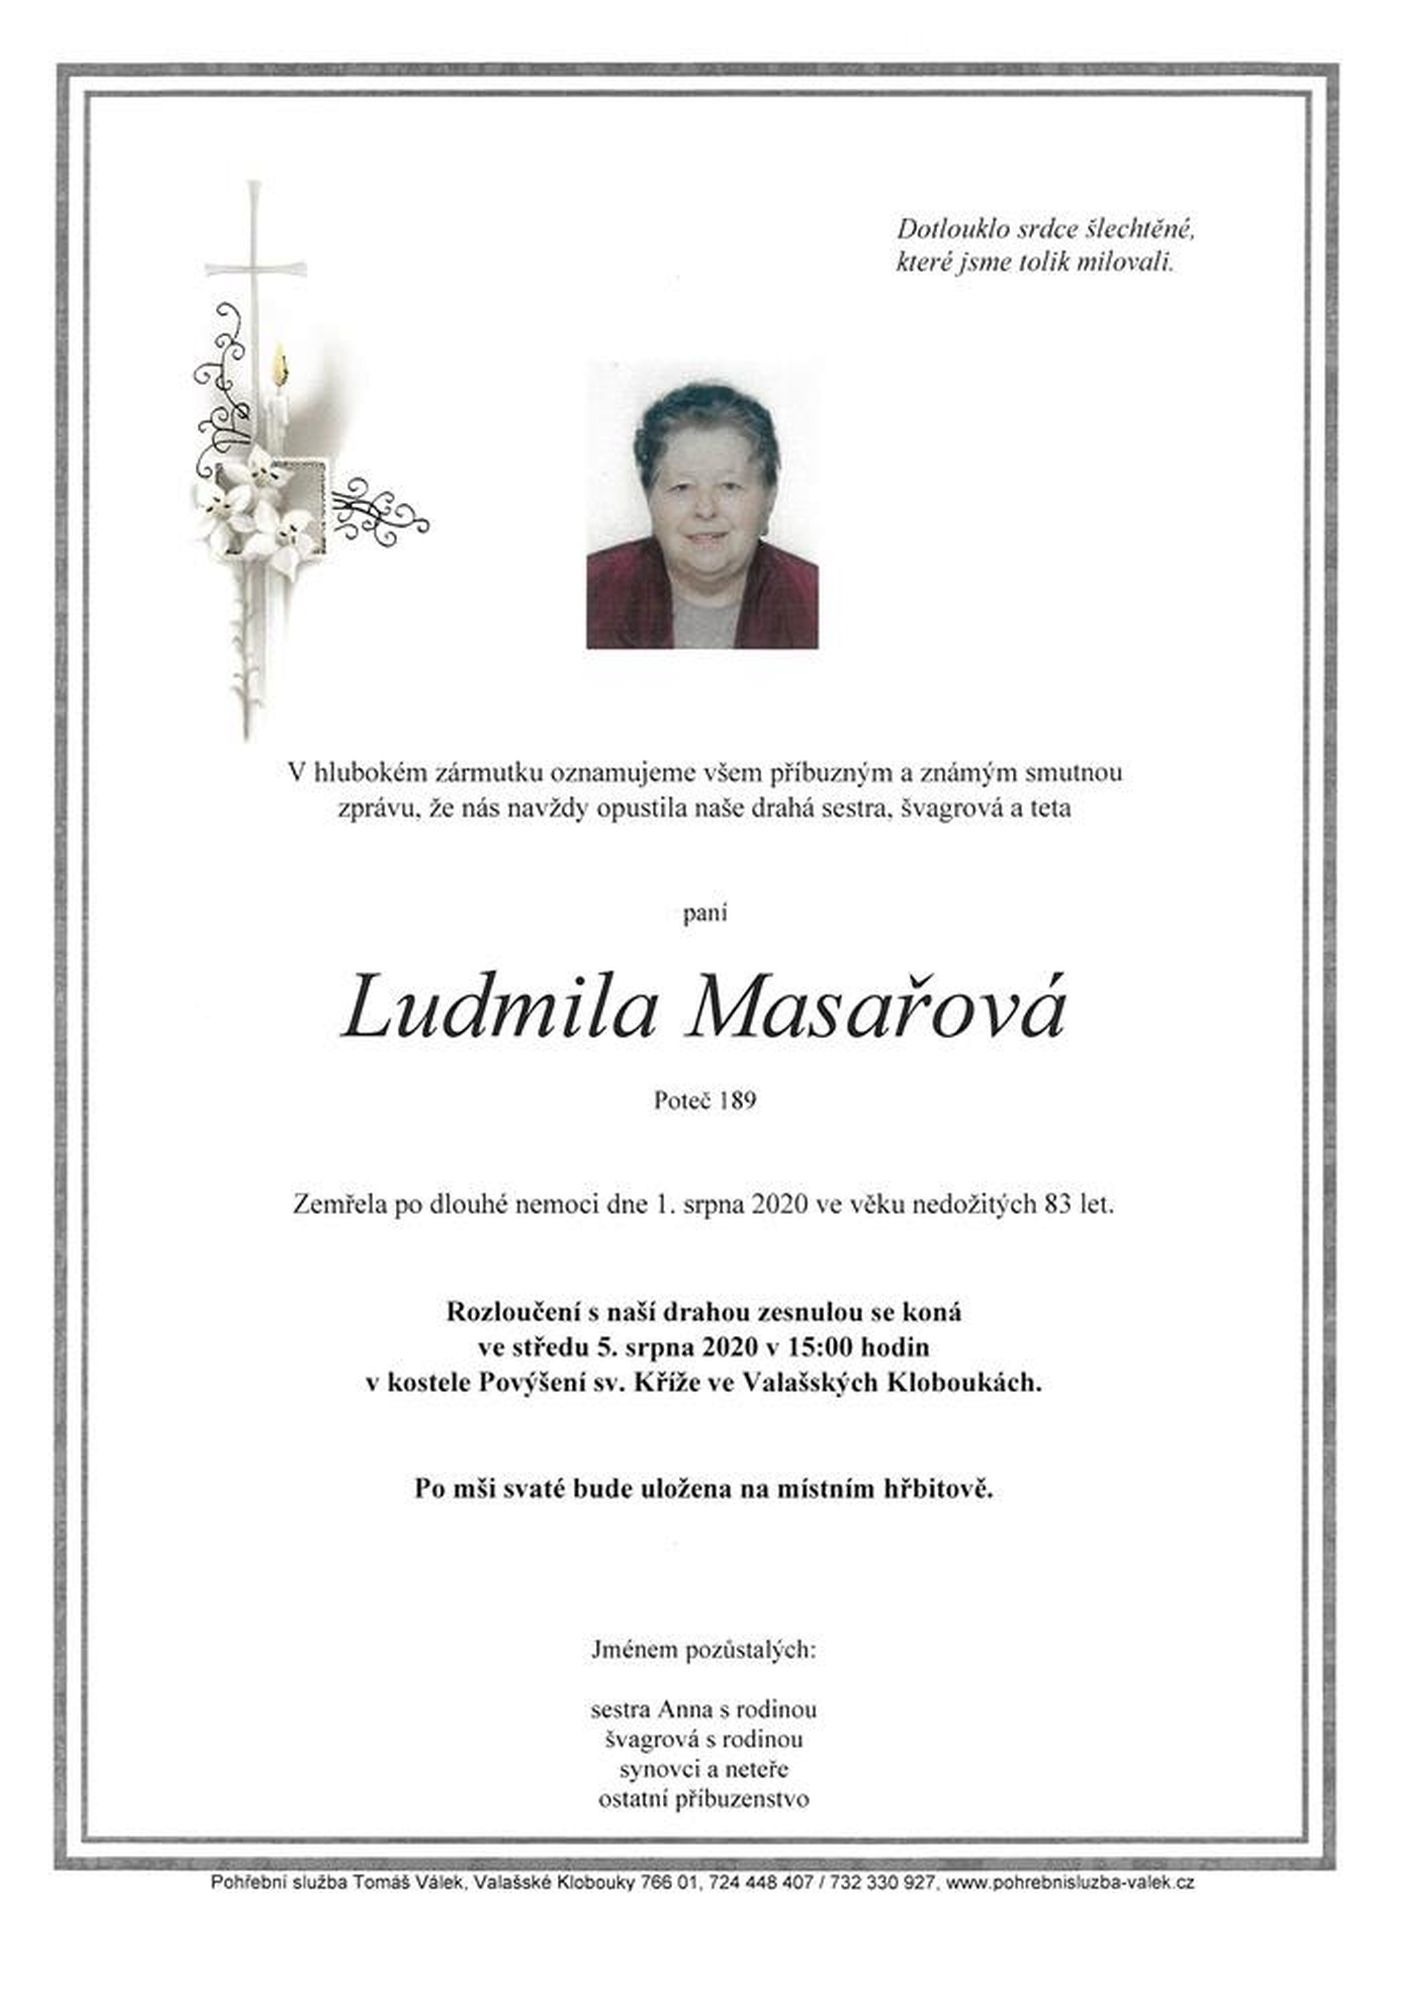 Ludmila Masařová